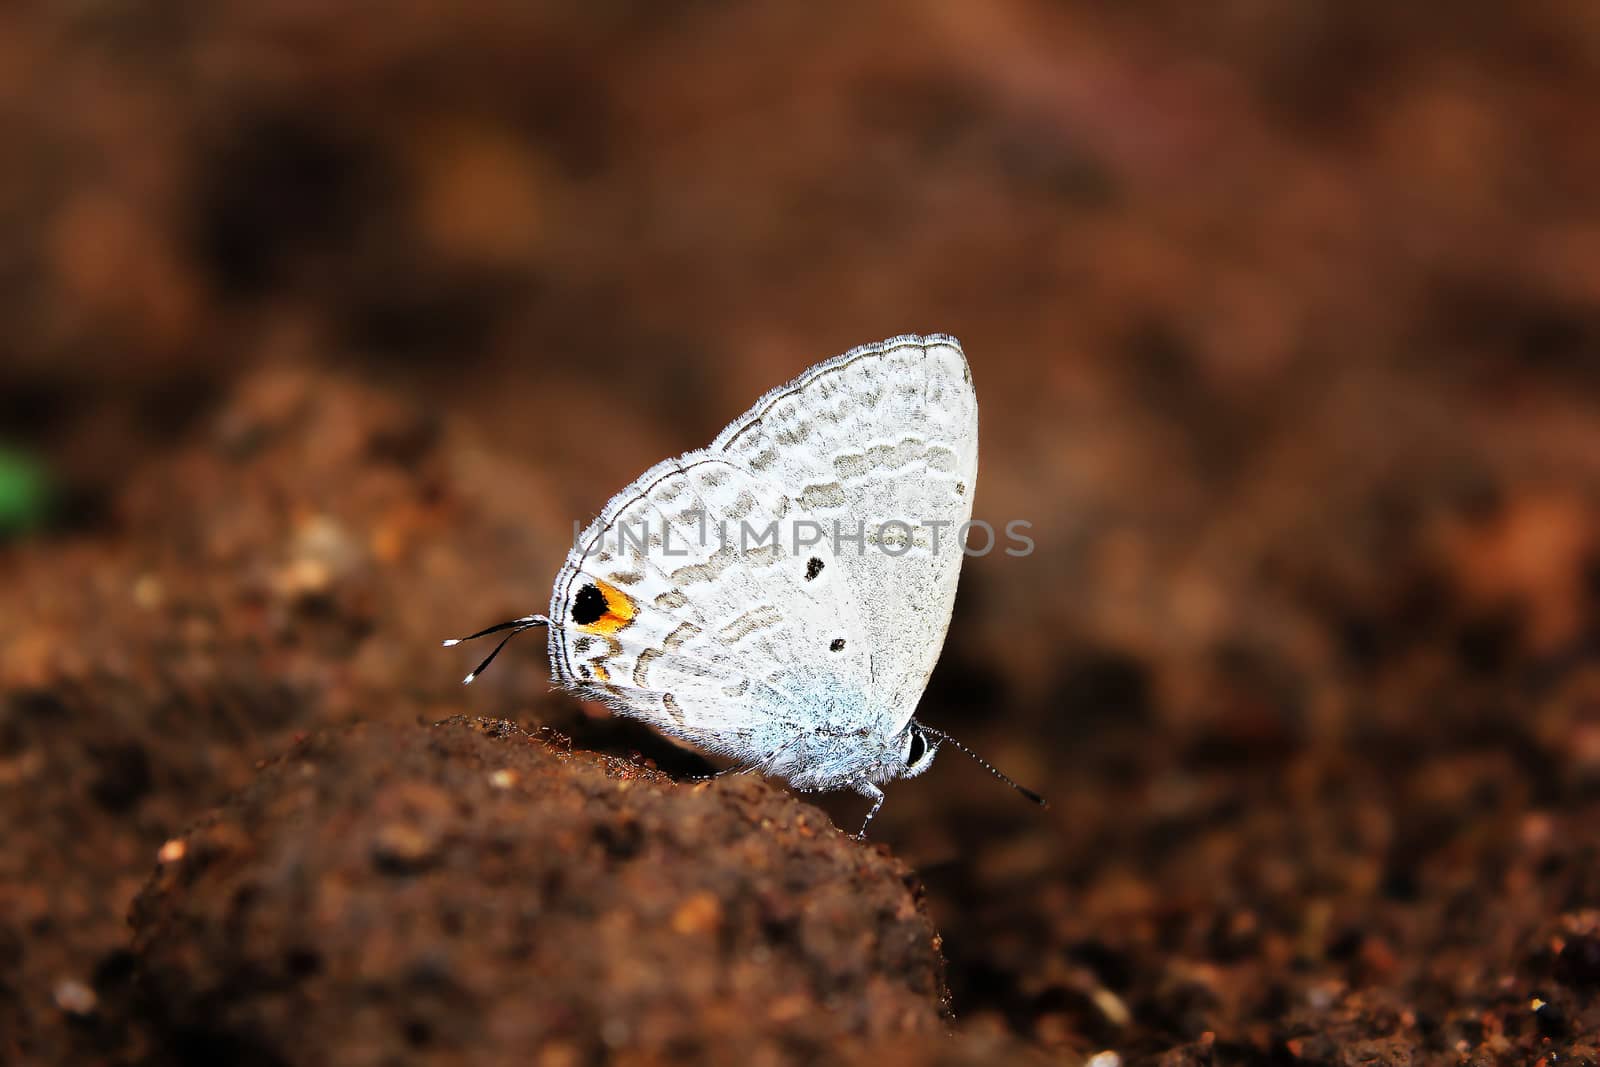 Gram Blue Butterfly by Puripatt